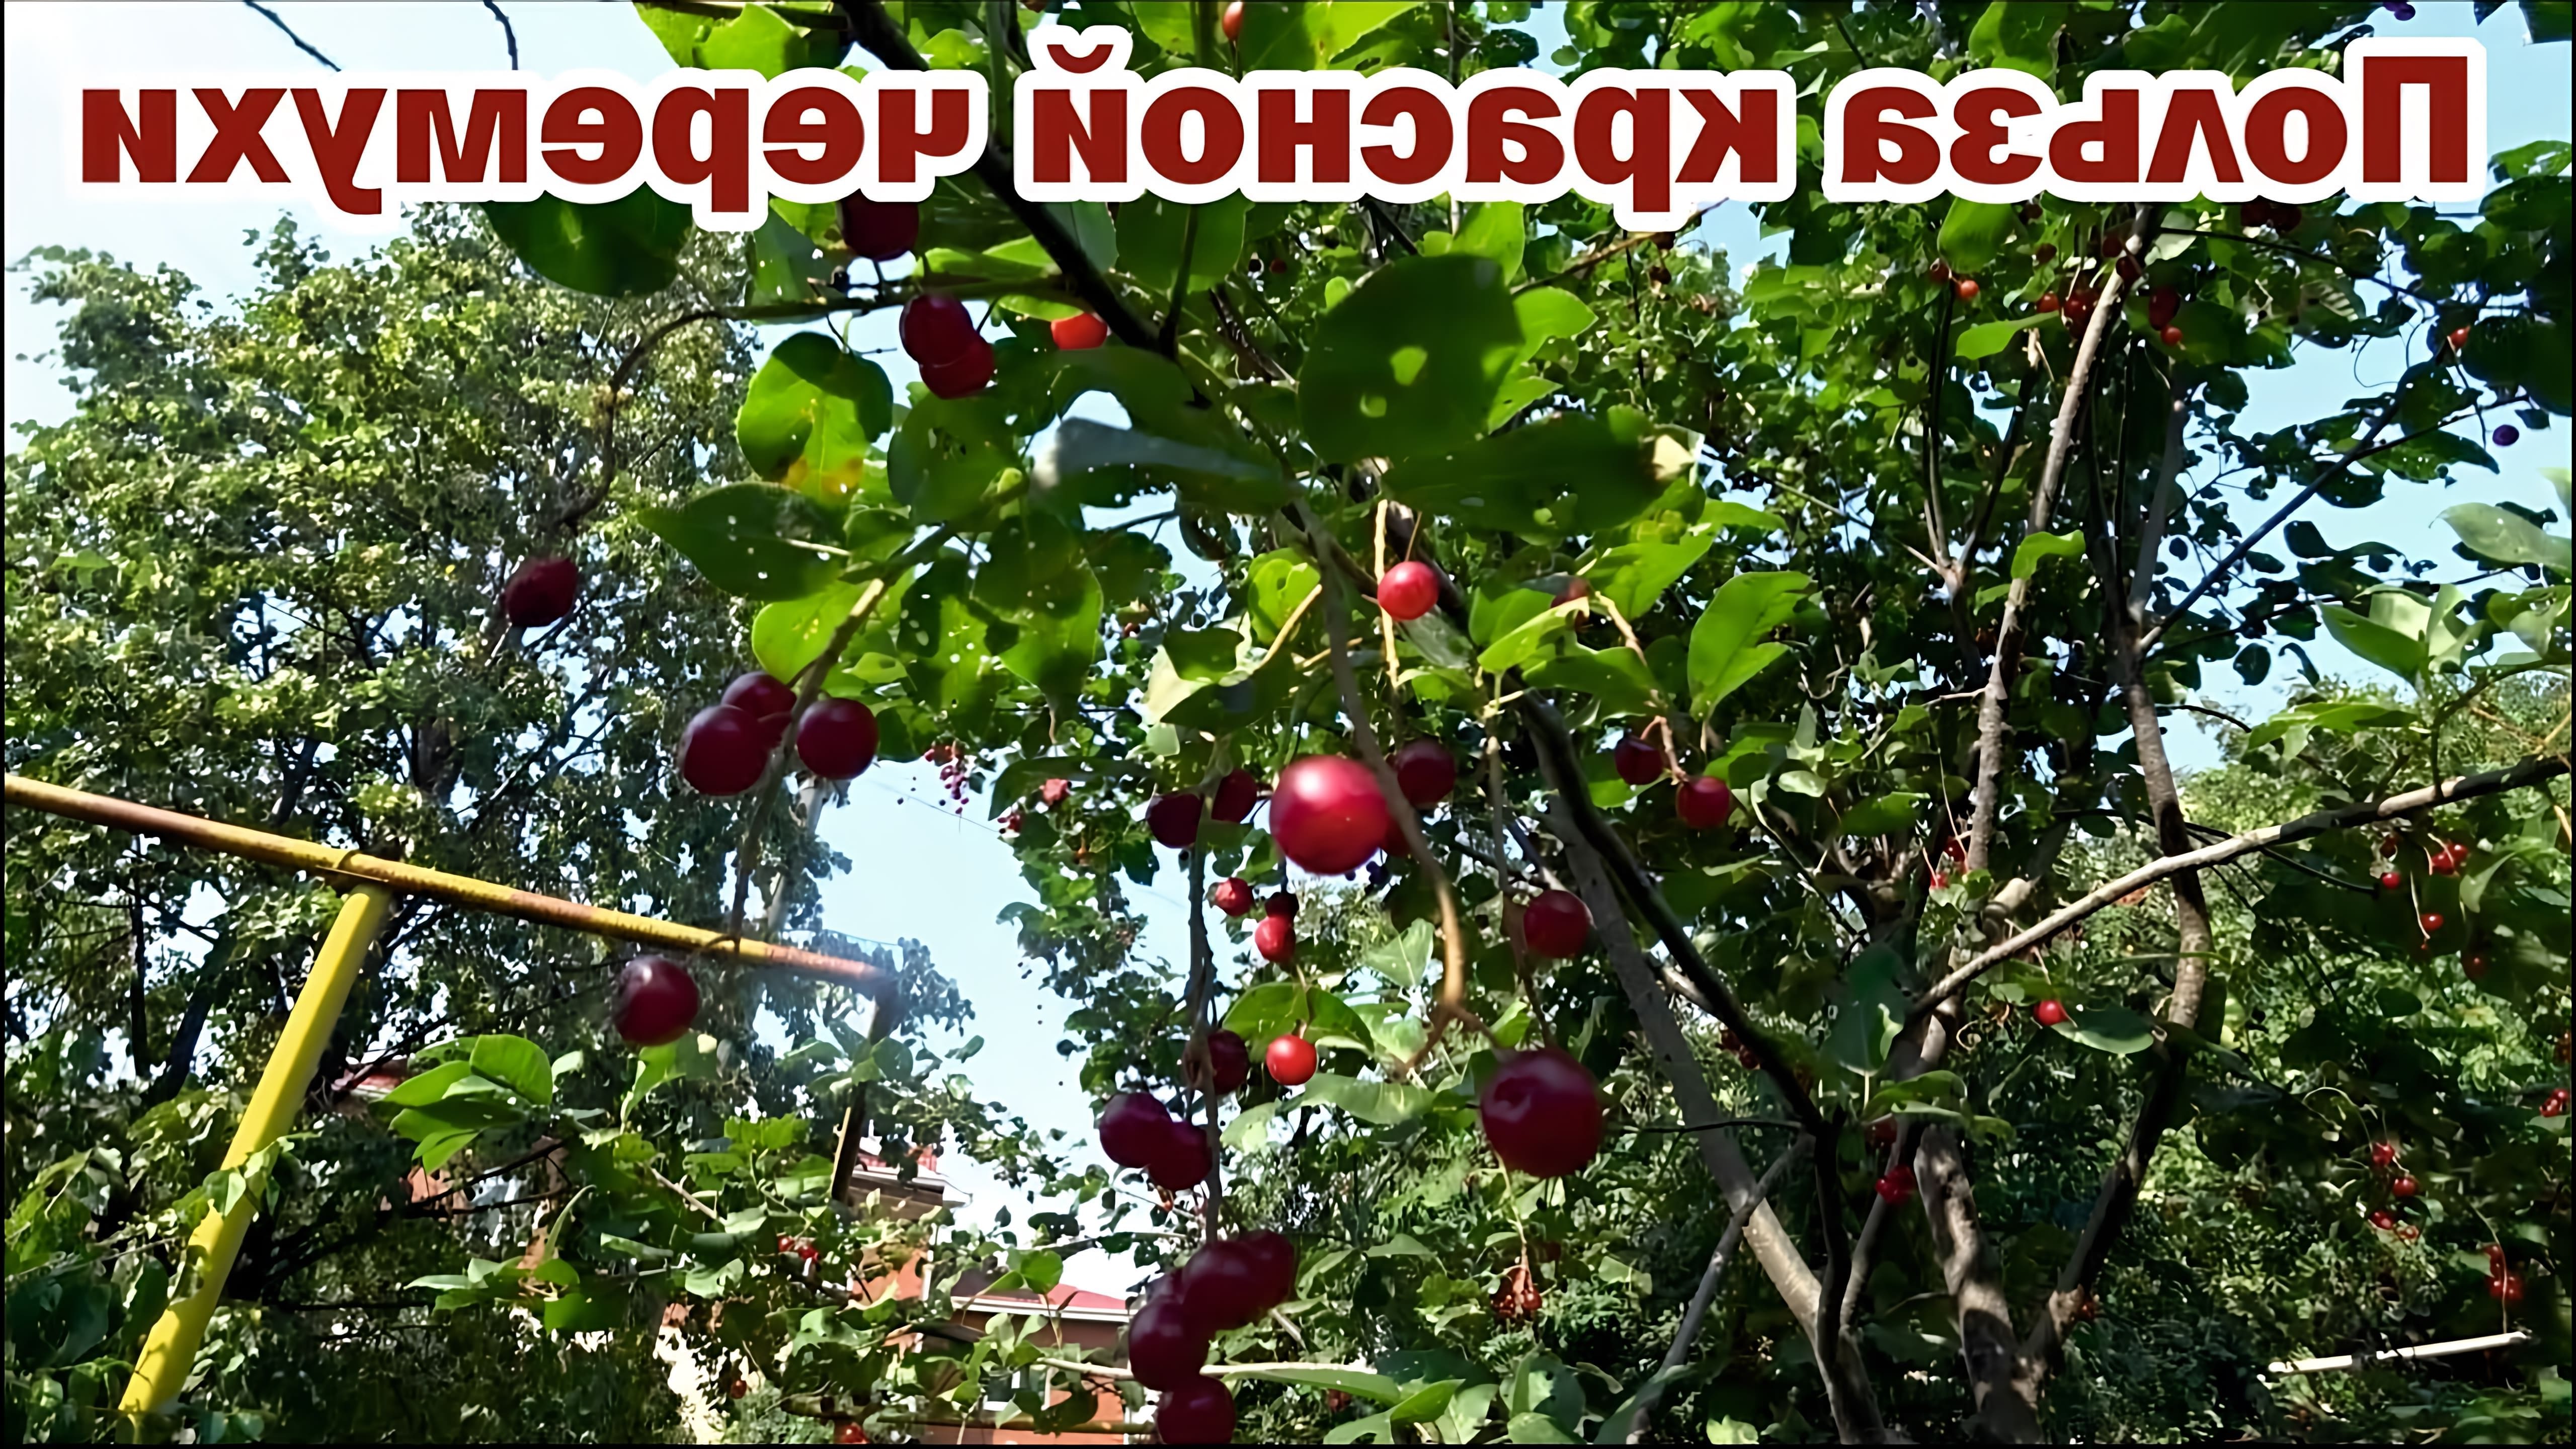 Красная черемуха - это дерево, которое широко используется в народной медицине для лечения различных заболеваний